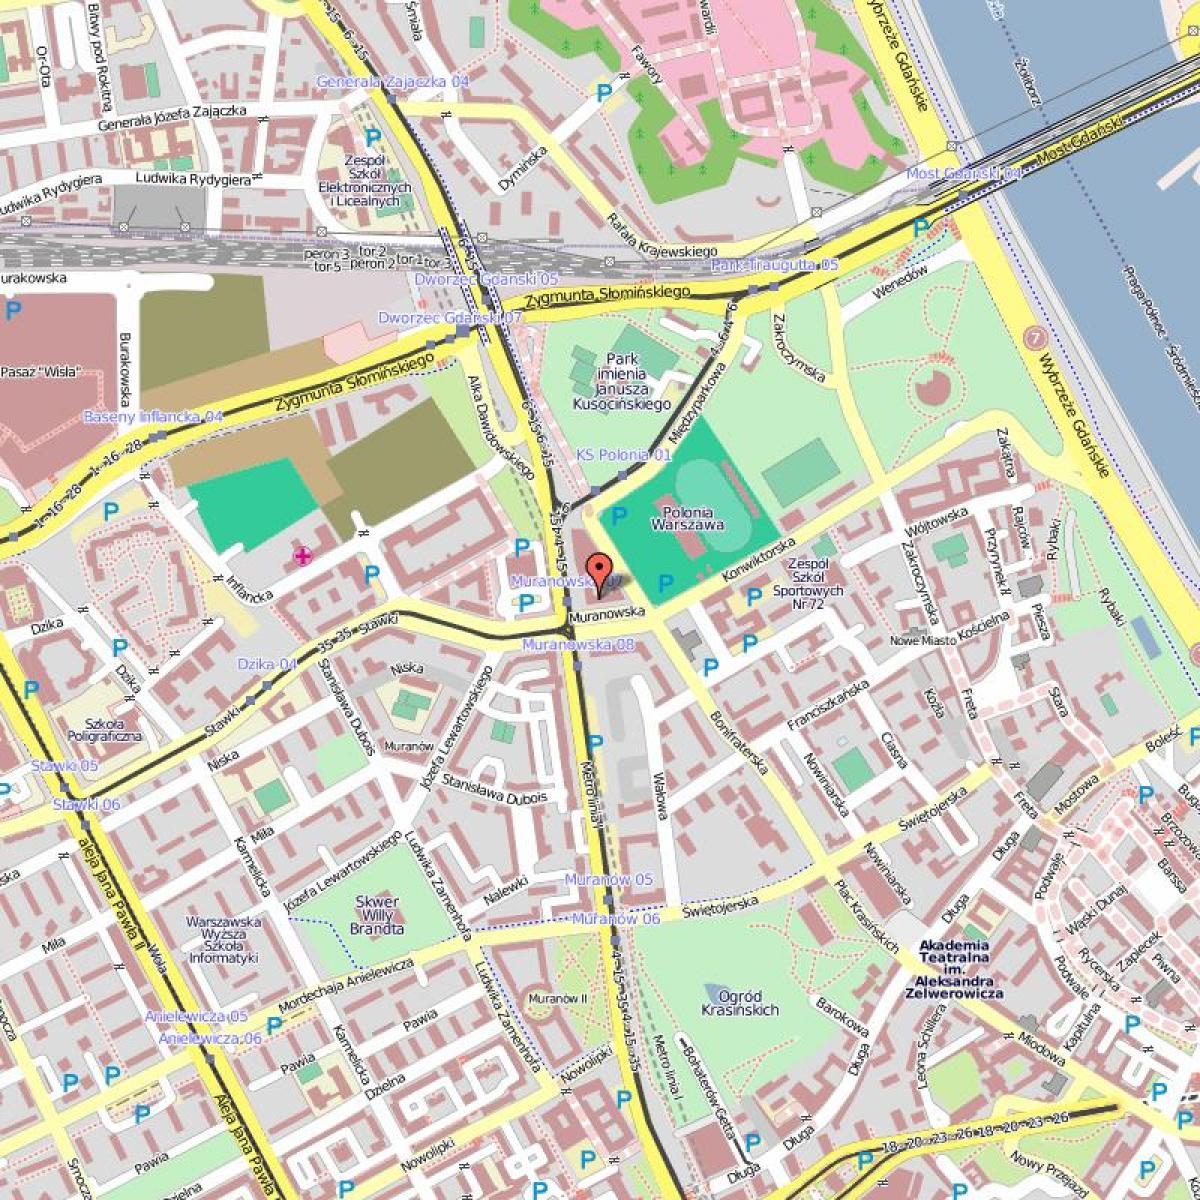 Քարտեզը Հին քաղաք է Վարշավա Լեհաստան